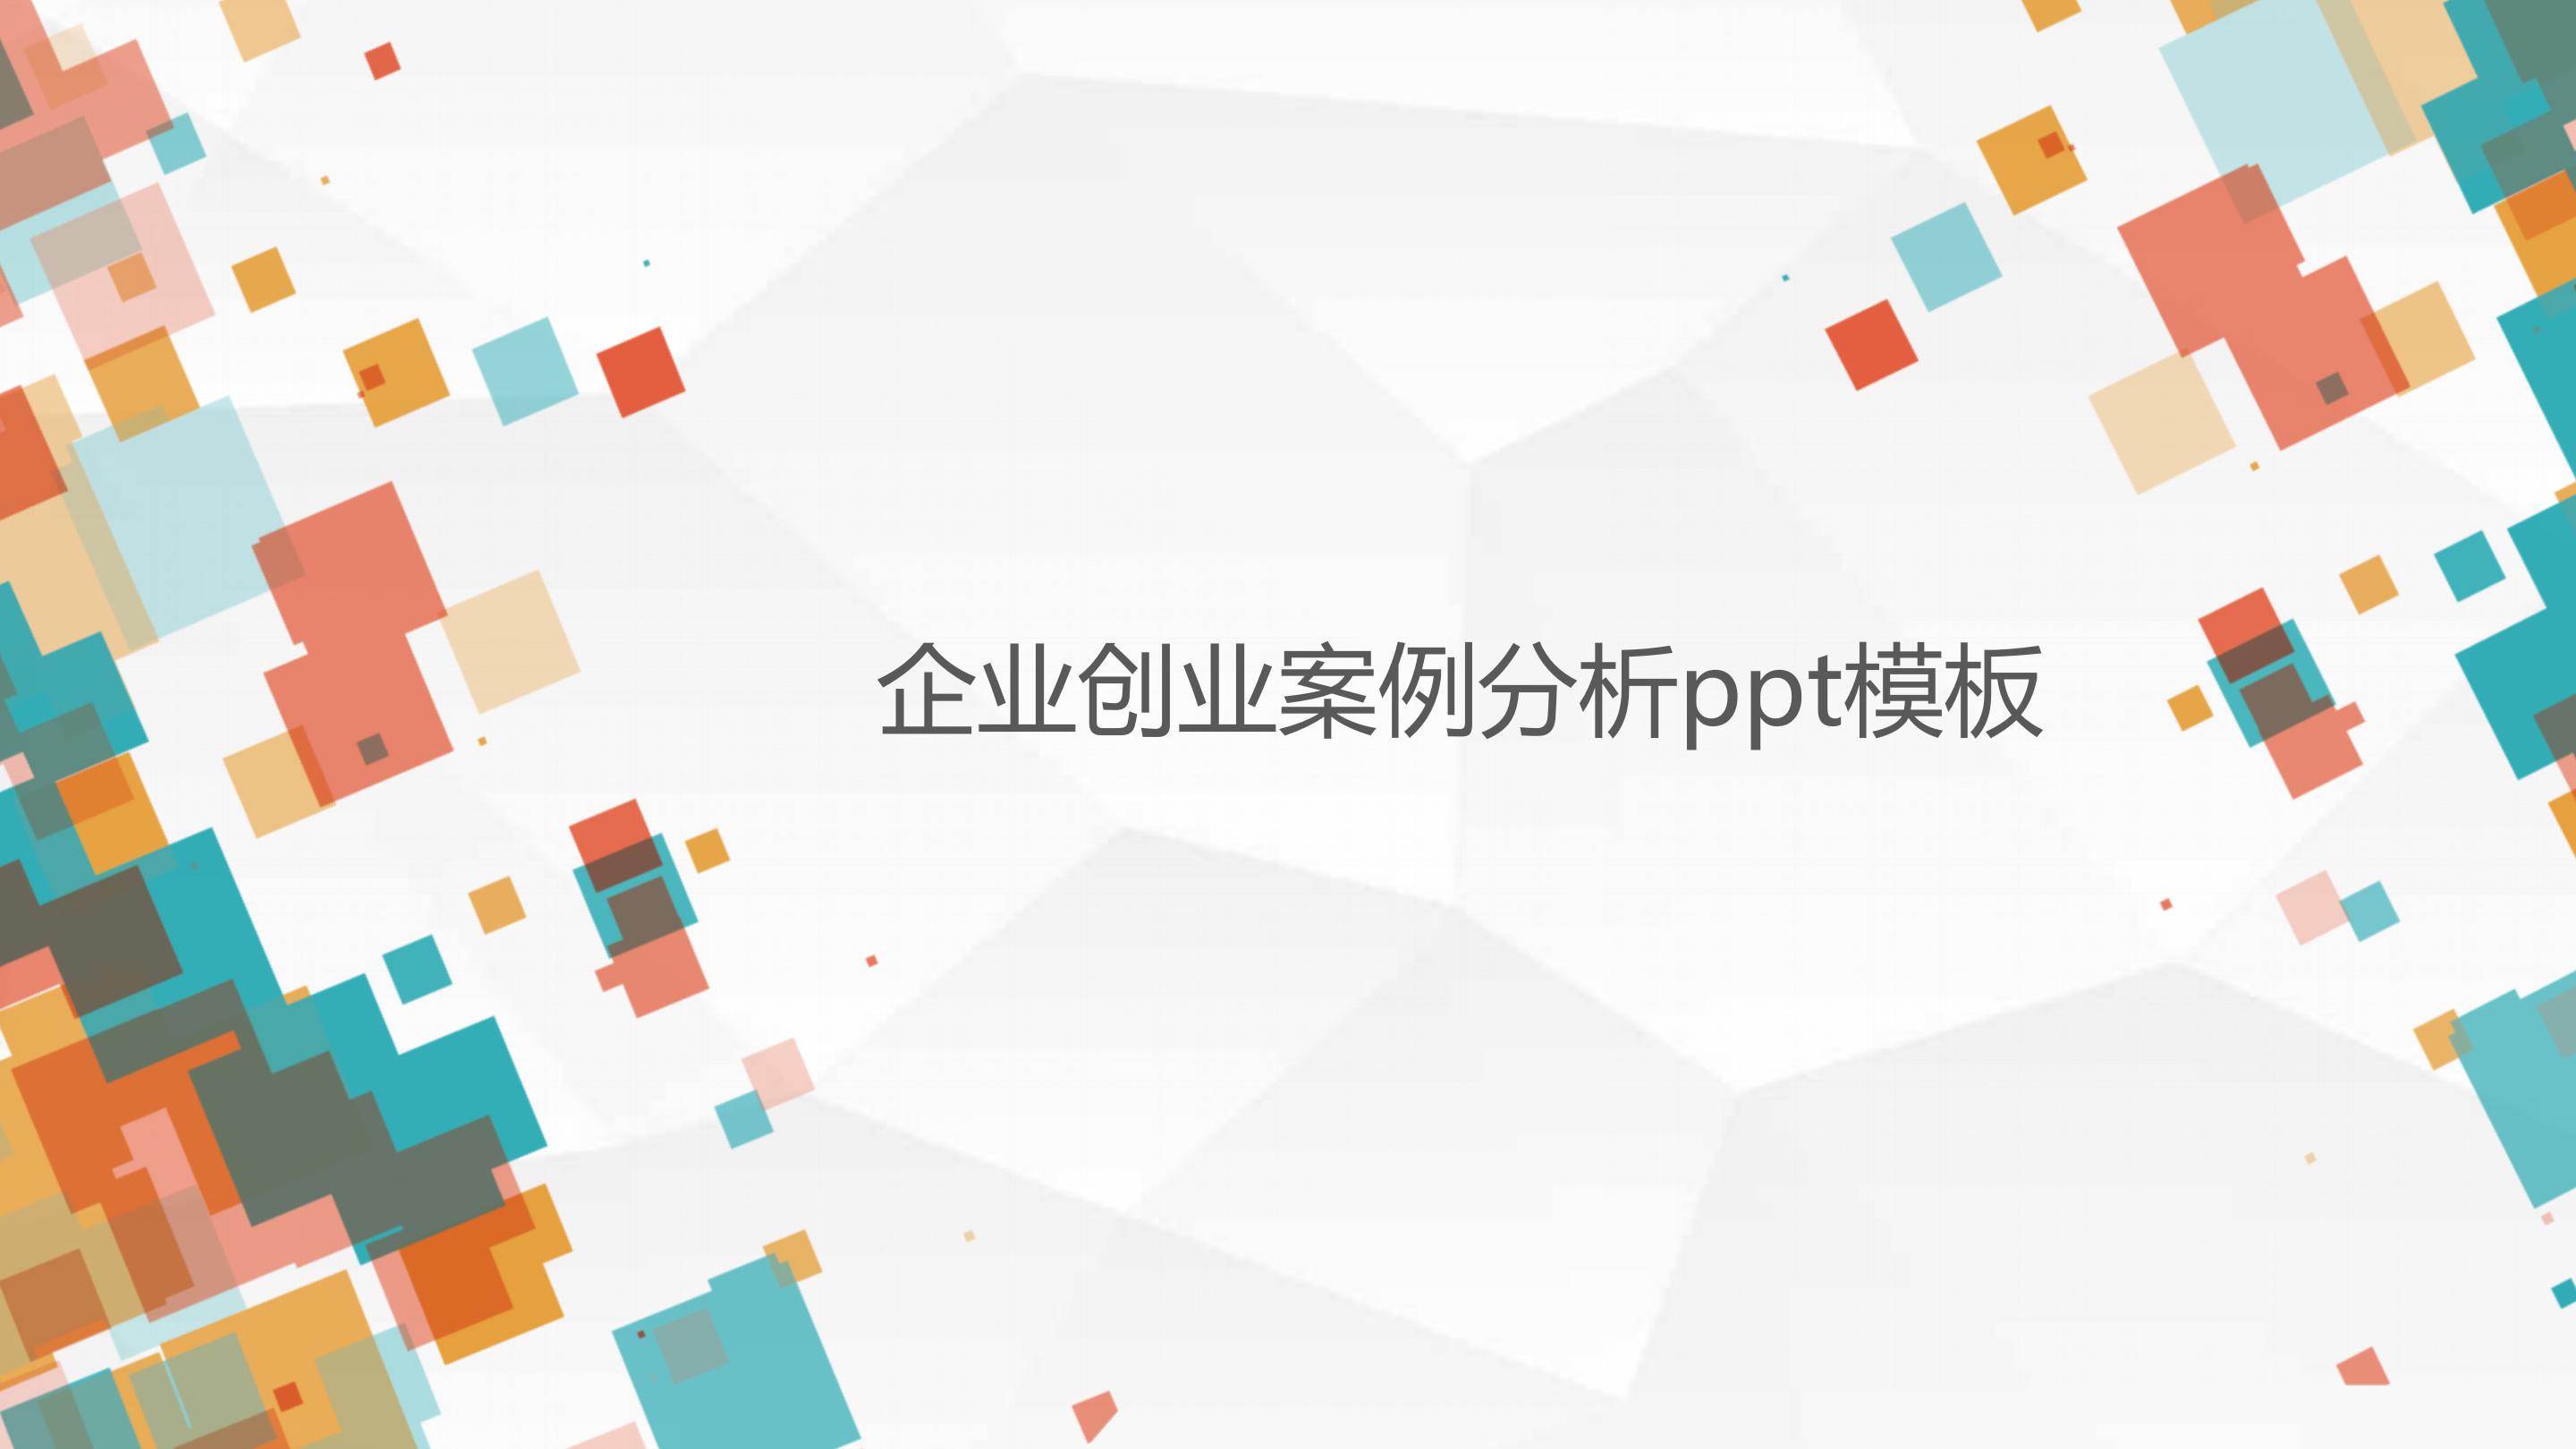 企业成功案例分析ppt模板下载-PPT家园